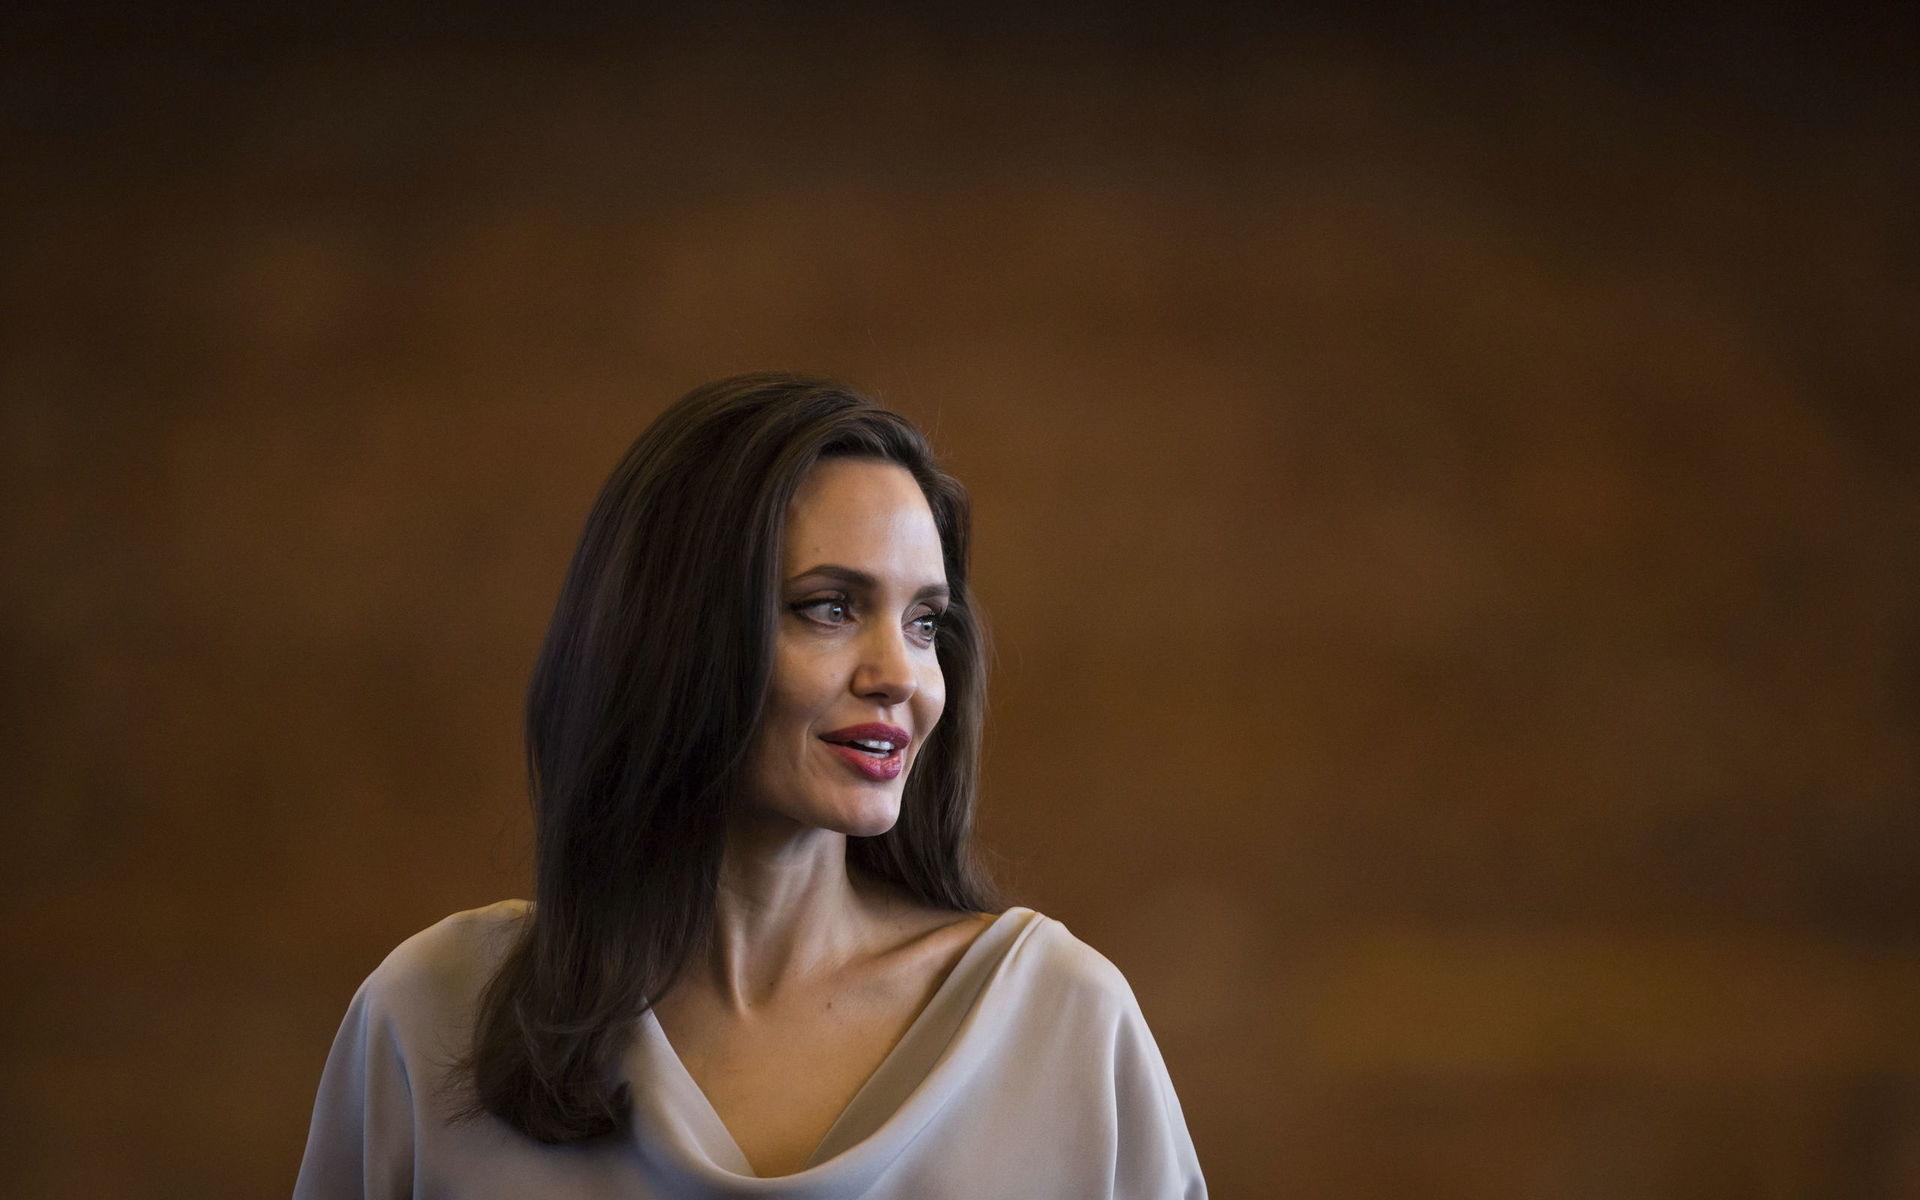 Att Angelina Jolie berättade om sin cancer fick Margareta Svensson Riggs att undersöka sig och då upptäcktes både mutationen BRCA, som ger ökad cancerrisk, och senare att hon hade bröstcancer.